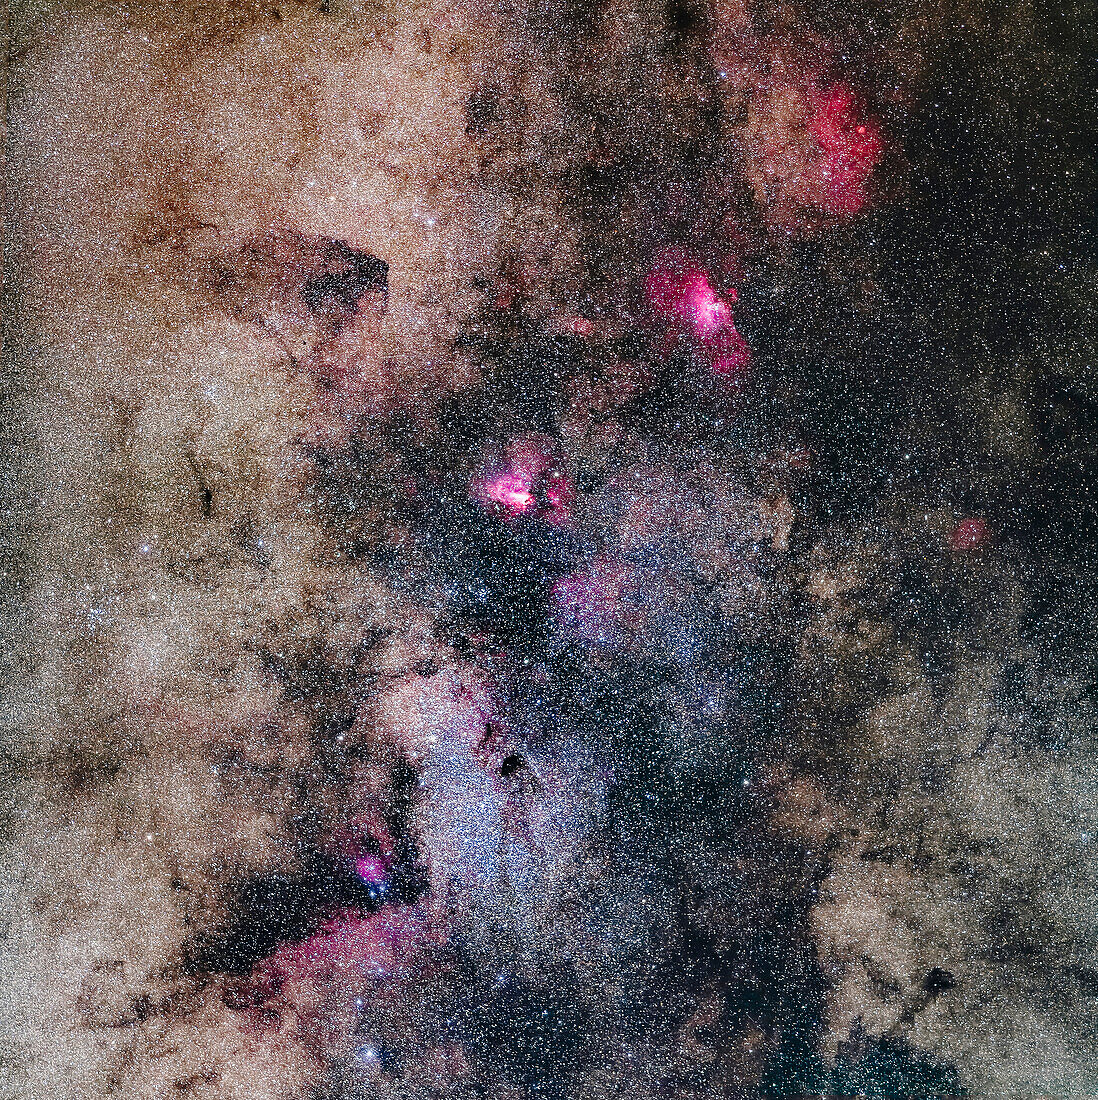 Ein Mosaik der reichen Region im Sternbild Schütze und im südlichen Serpens, von der Kleinen Schütze-Sternwolke (Messier 24) unten bis zu Messier 16, dem Adlernebel, oben, mit einem schwächeren Nebel darüber um den Sternhaufen NGC 6604. In der Mitte befindet sich der Schwanen- oder Omeganebel, Messier 17. Der Dunkelnebel unterhalb der Mitte ist Barnard 92.